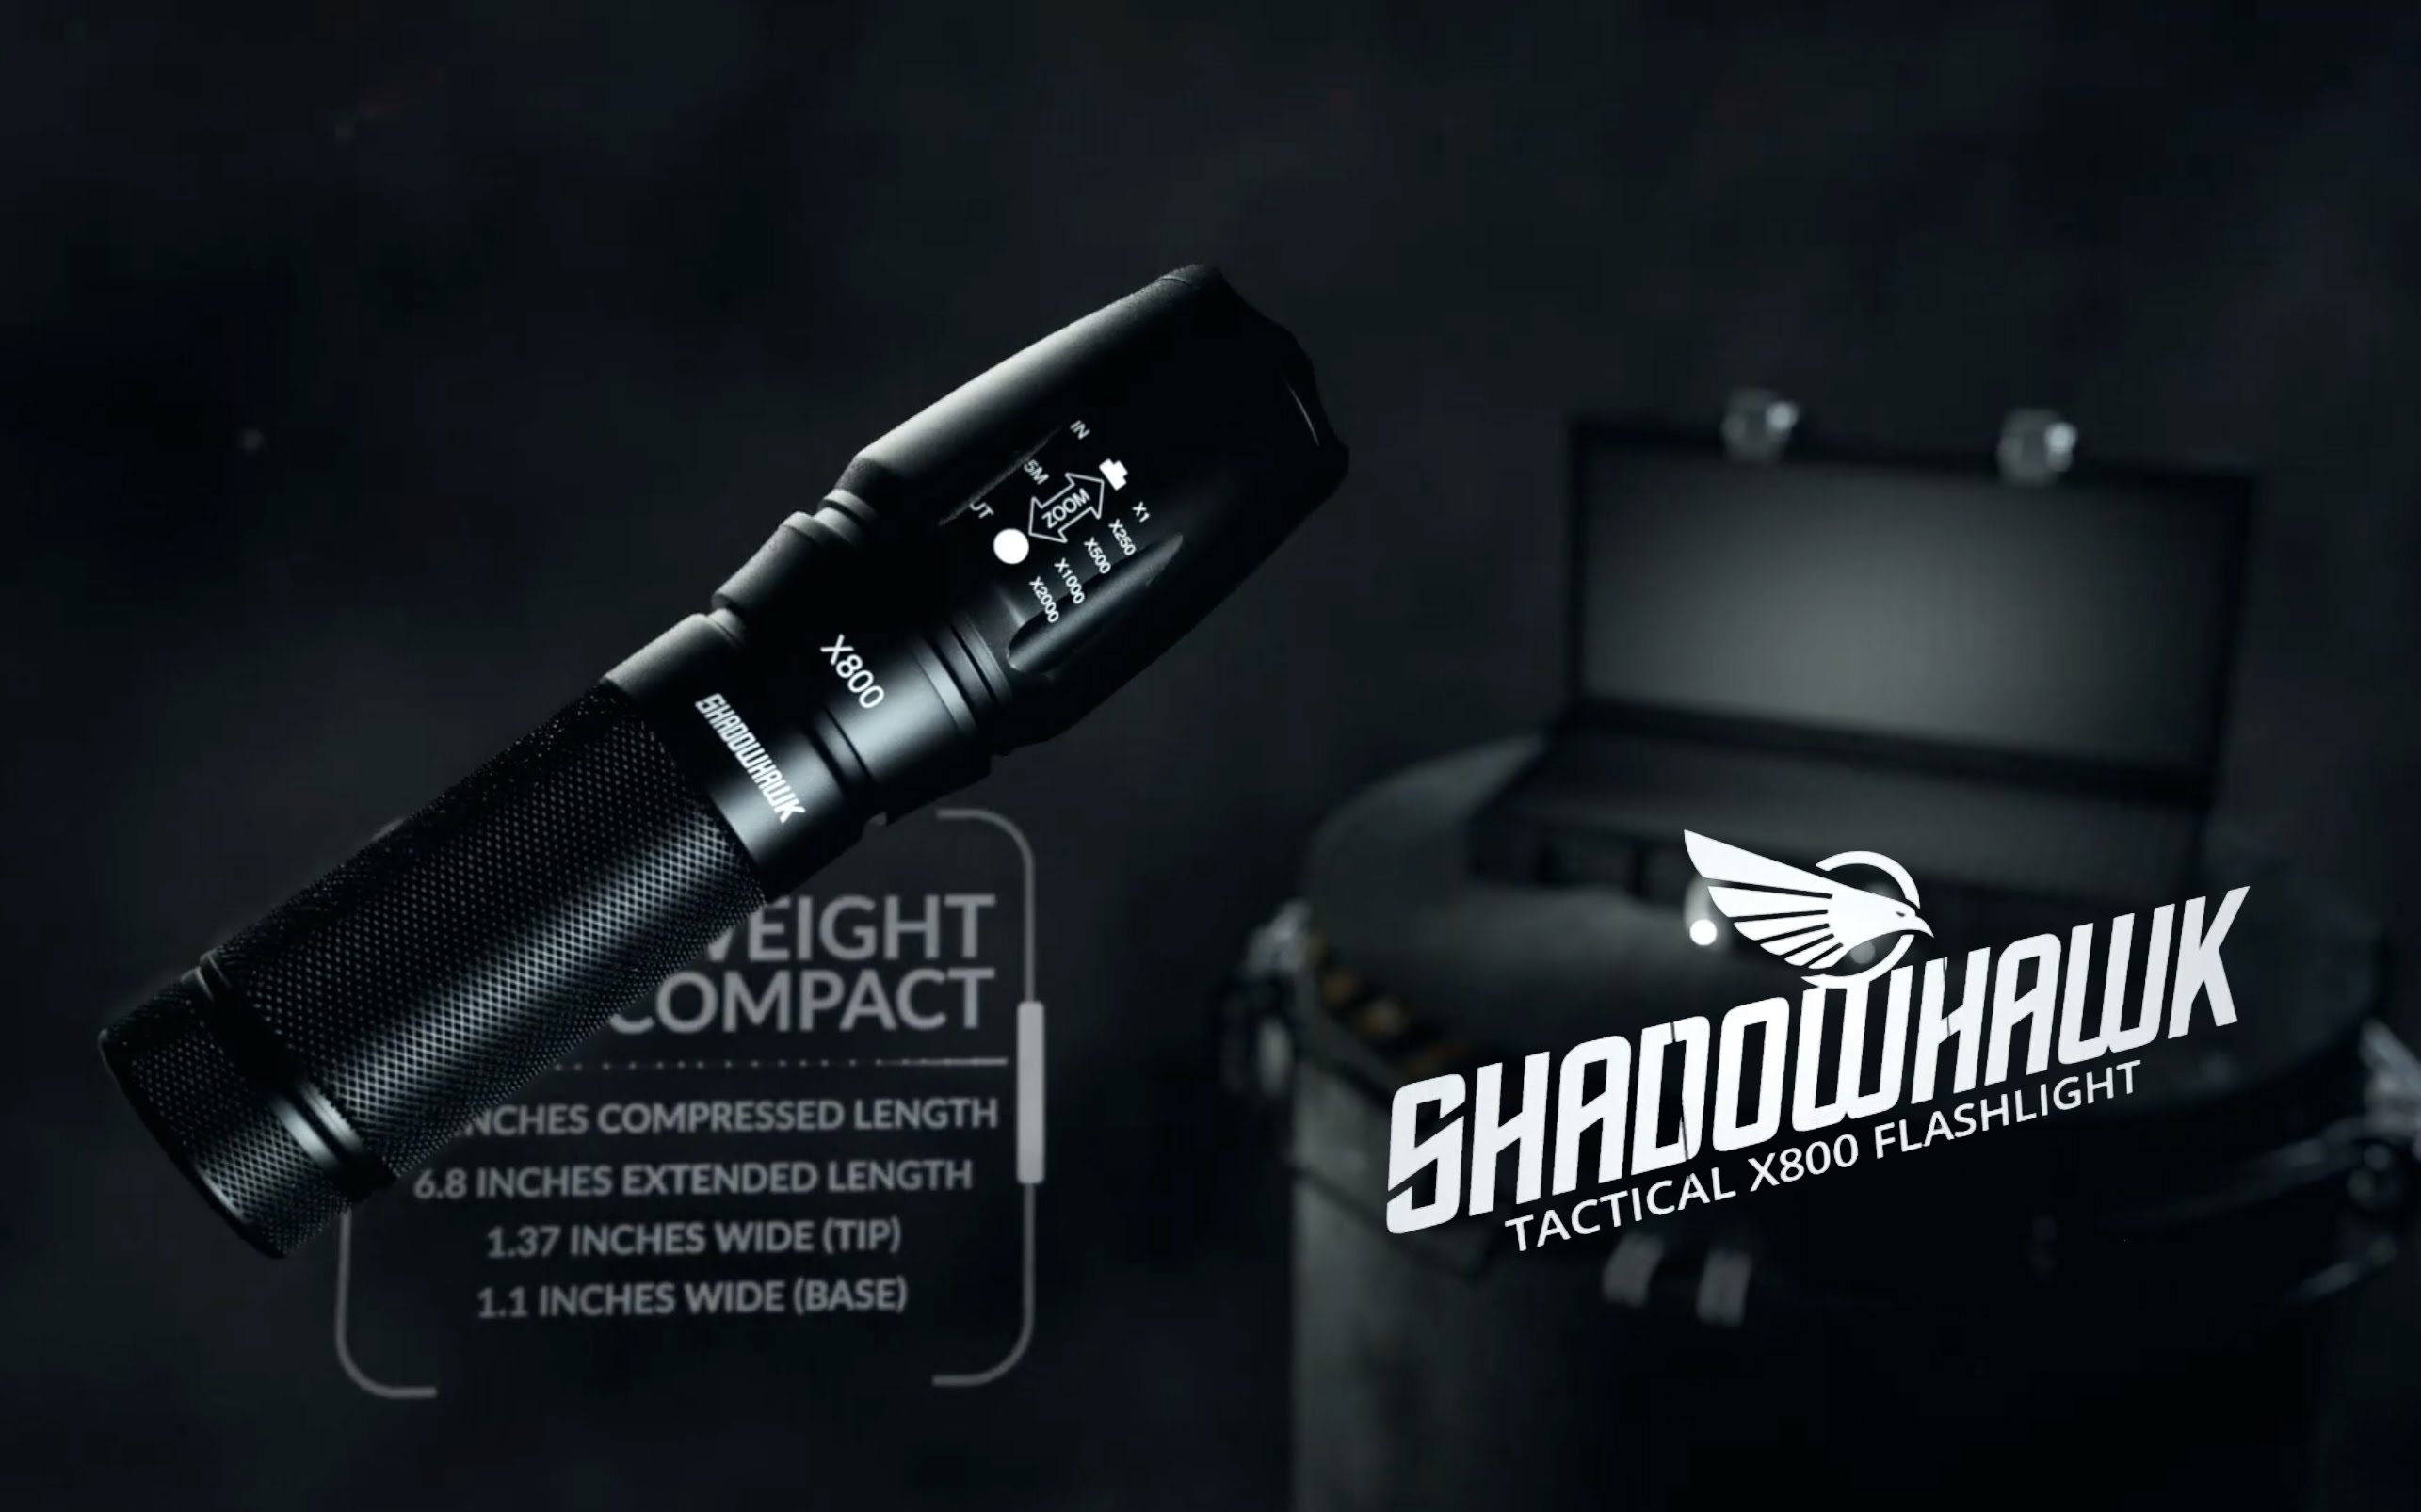 真正的军用级黑暗克星-Shadowhawk X800 战术手电